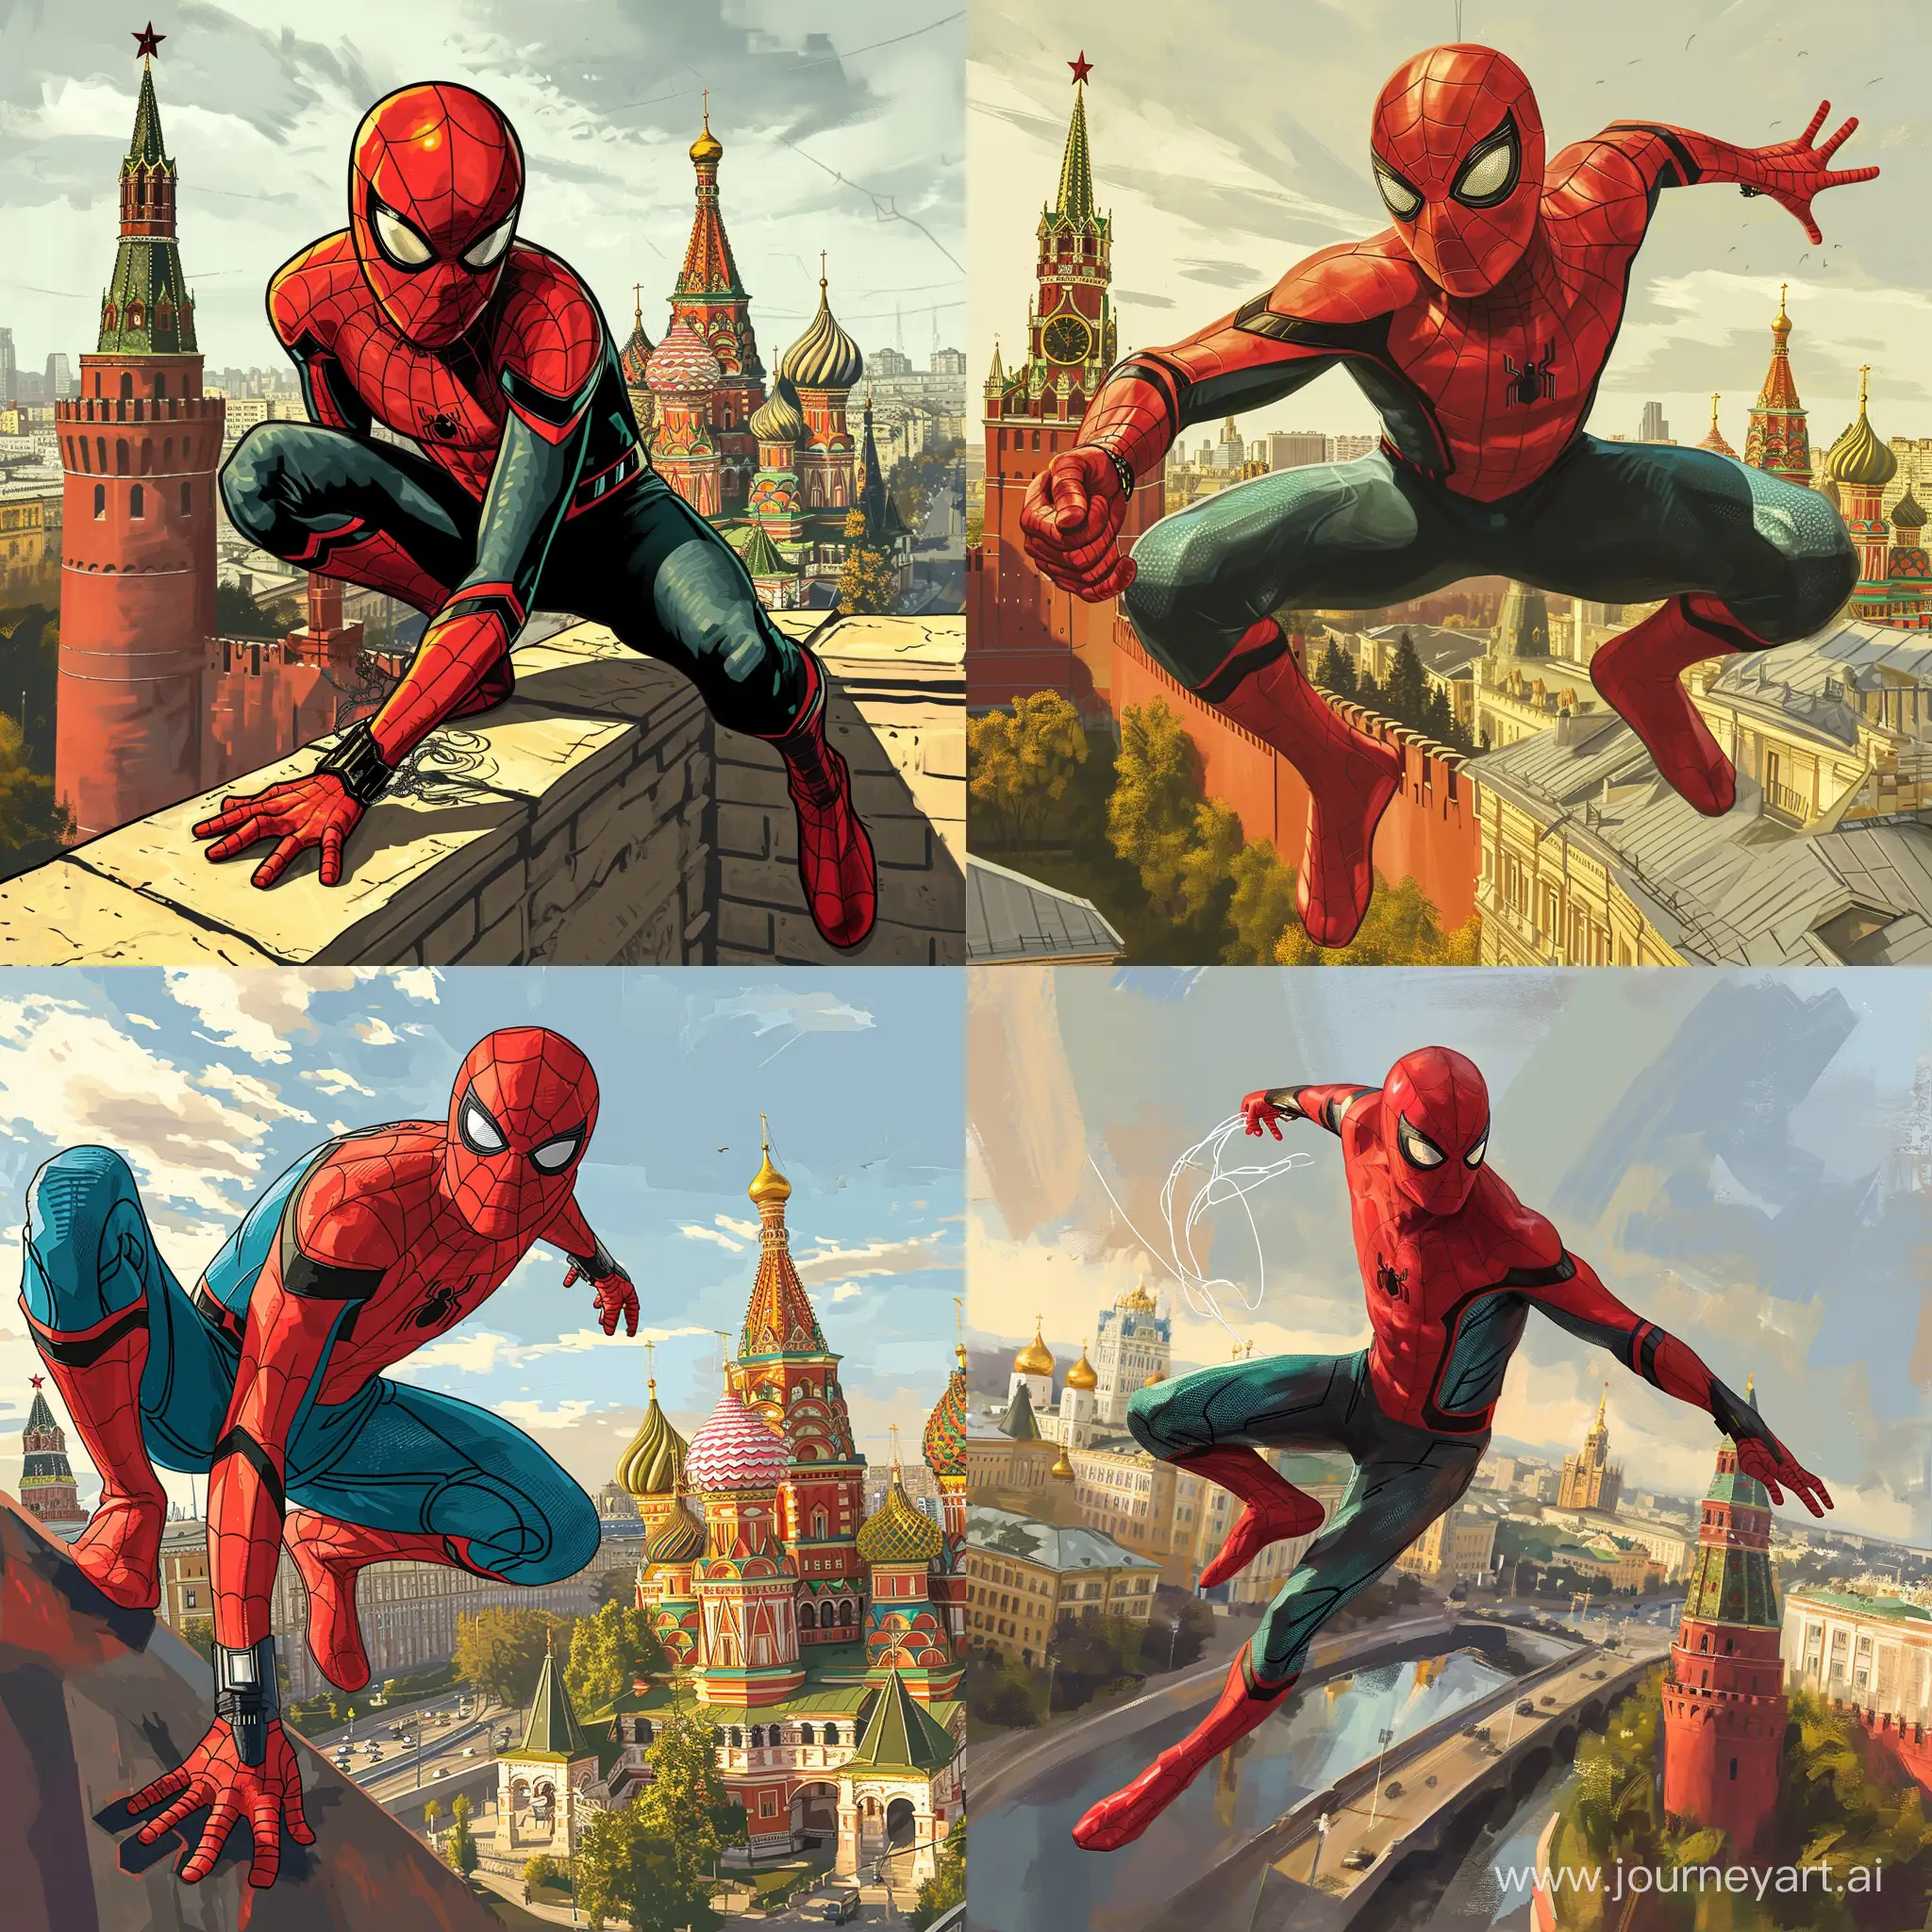 SpiderMan-Russian-Folk-Tales-Artwork